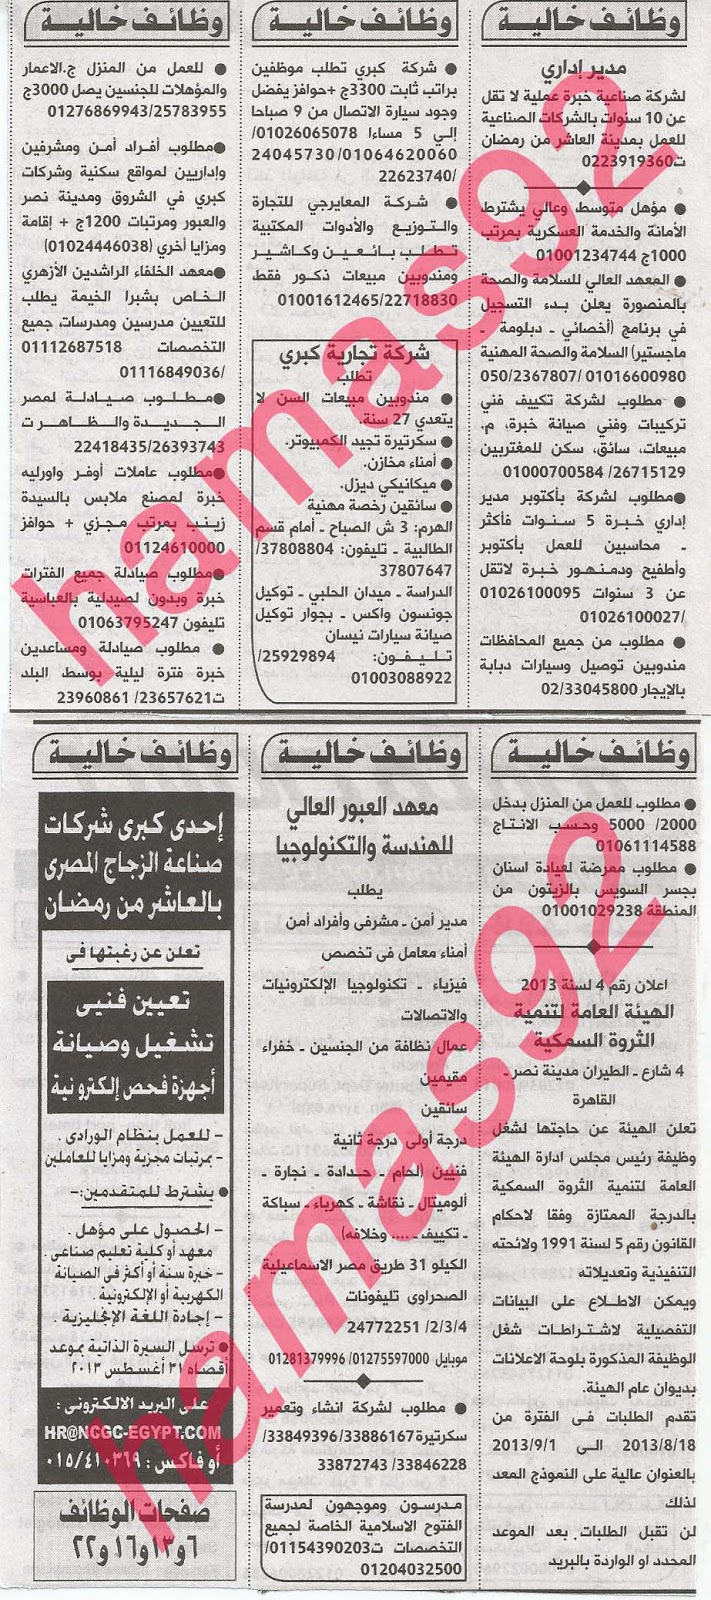 وظائف خالية فى جريدة الاهرام الجمعة 16-08-2013 6